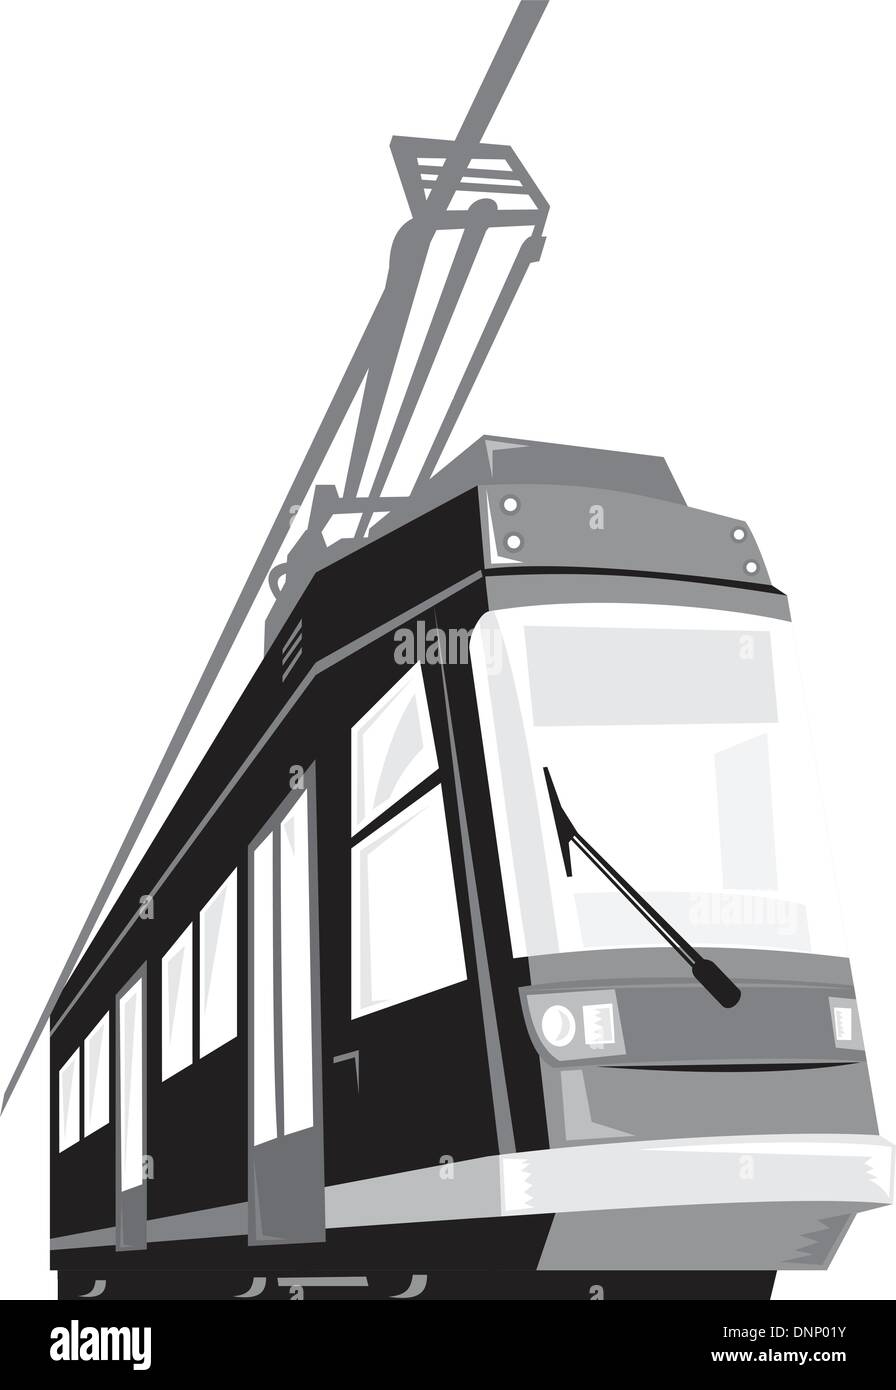 Beispiel für eine moderne Straßenbahn trainieren Straßenbahn aus einem flachen Winkel auf isolierten weißen Hintergrund getan im retro-Stil betrachtet. Stock Vektor